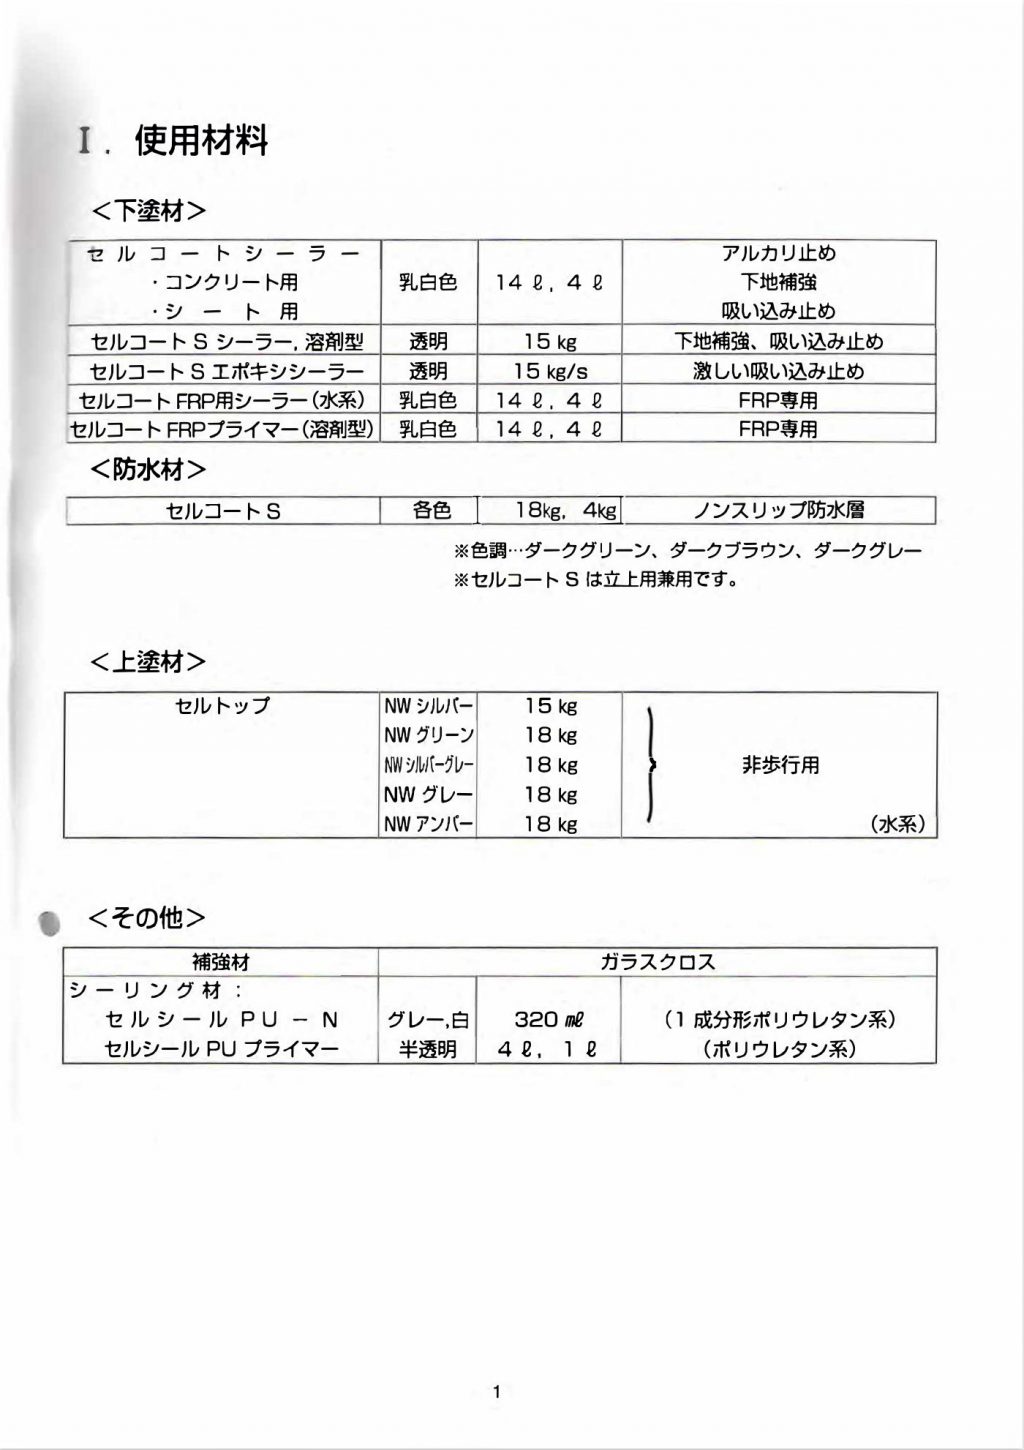 関西パテ化工 セルコートS ノンスリップタイプ 18kg用 ダークグレー - 4